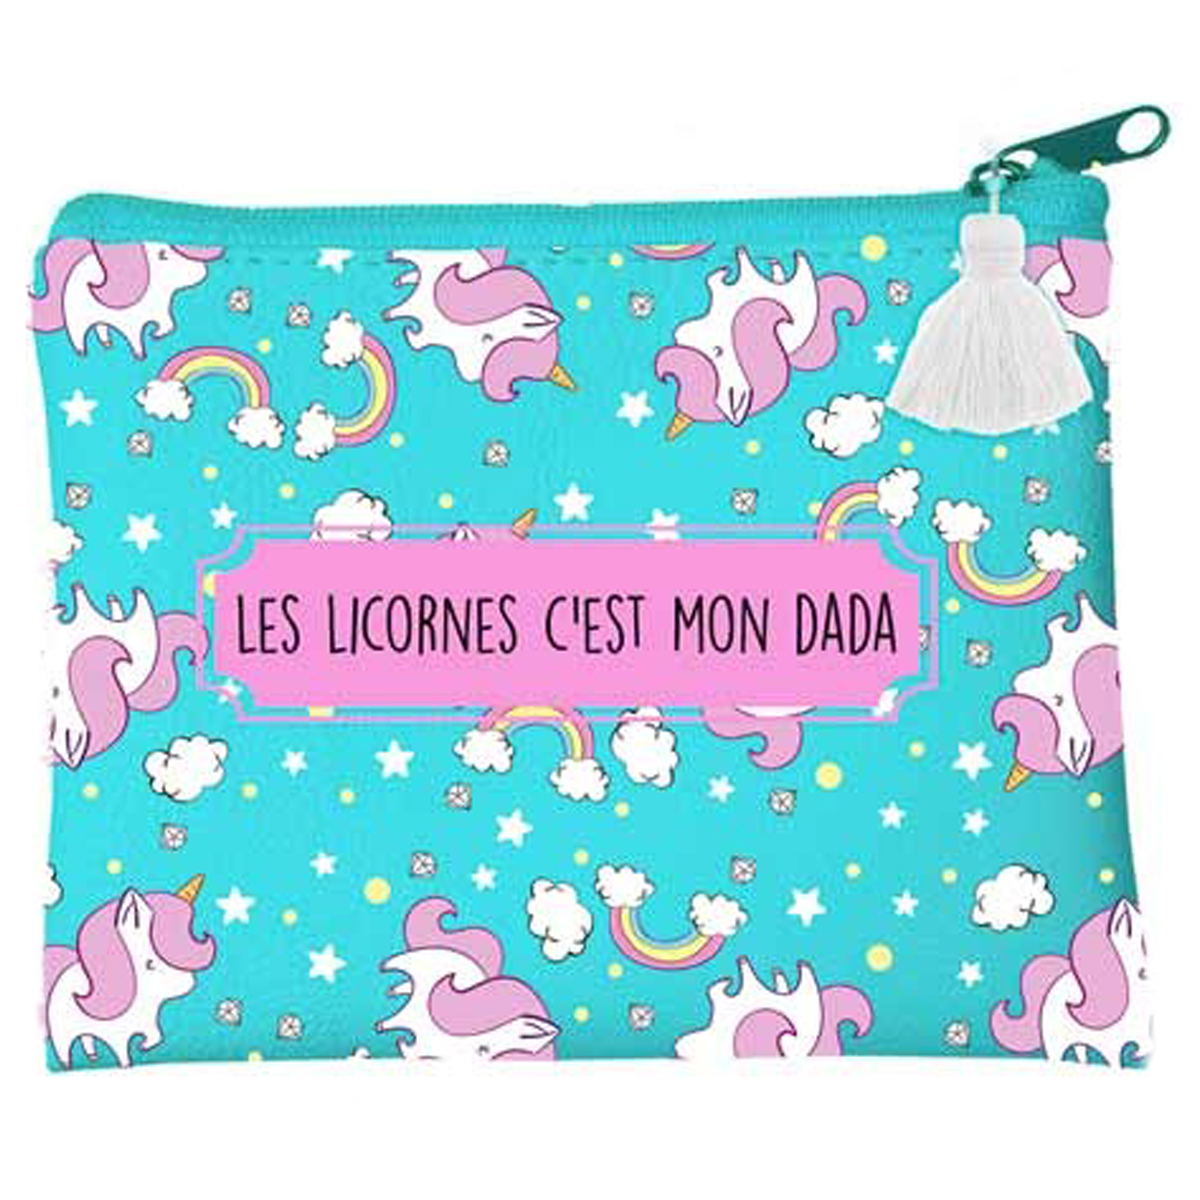 Porte-monnaie \'Licorne My Unicorn\' turquoise rose (Les licornes c\'est mon dada) - 115x10 cm - [P9686]